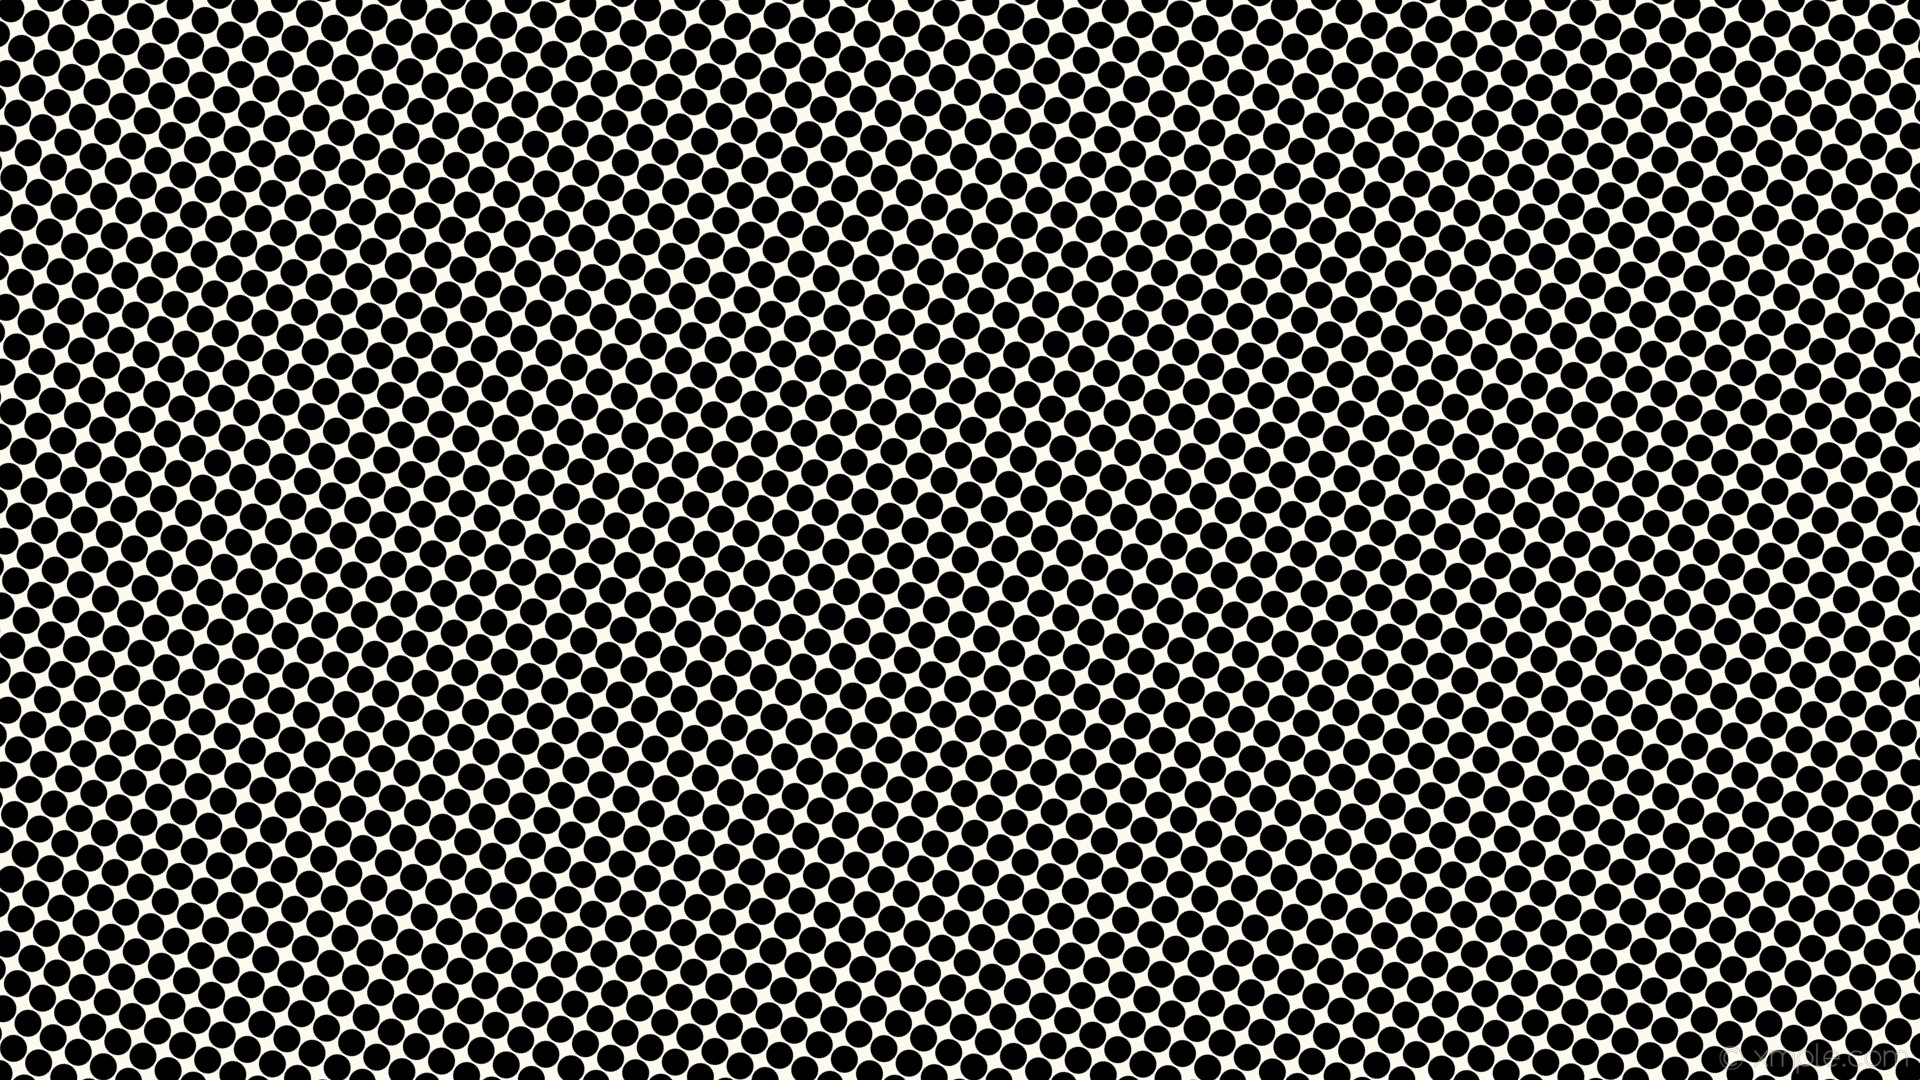 1920x1080 wallpaper polka dots spots black white floral white #fffaf0 #000000 240Â°  27px 29px